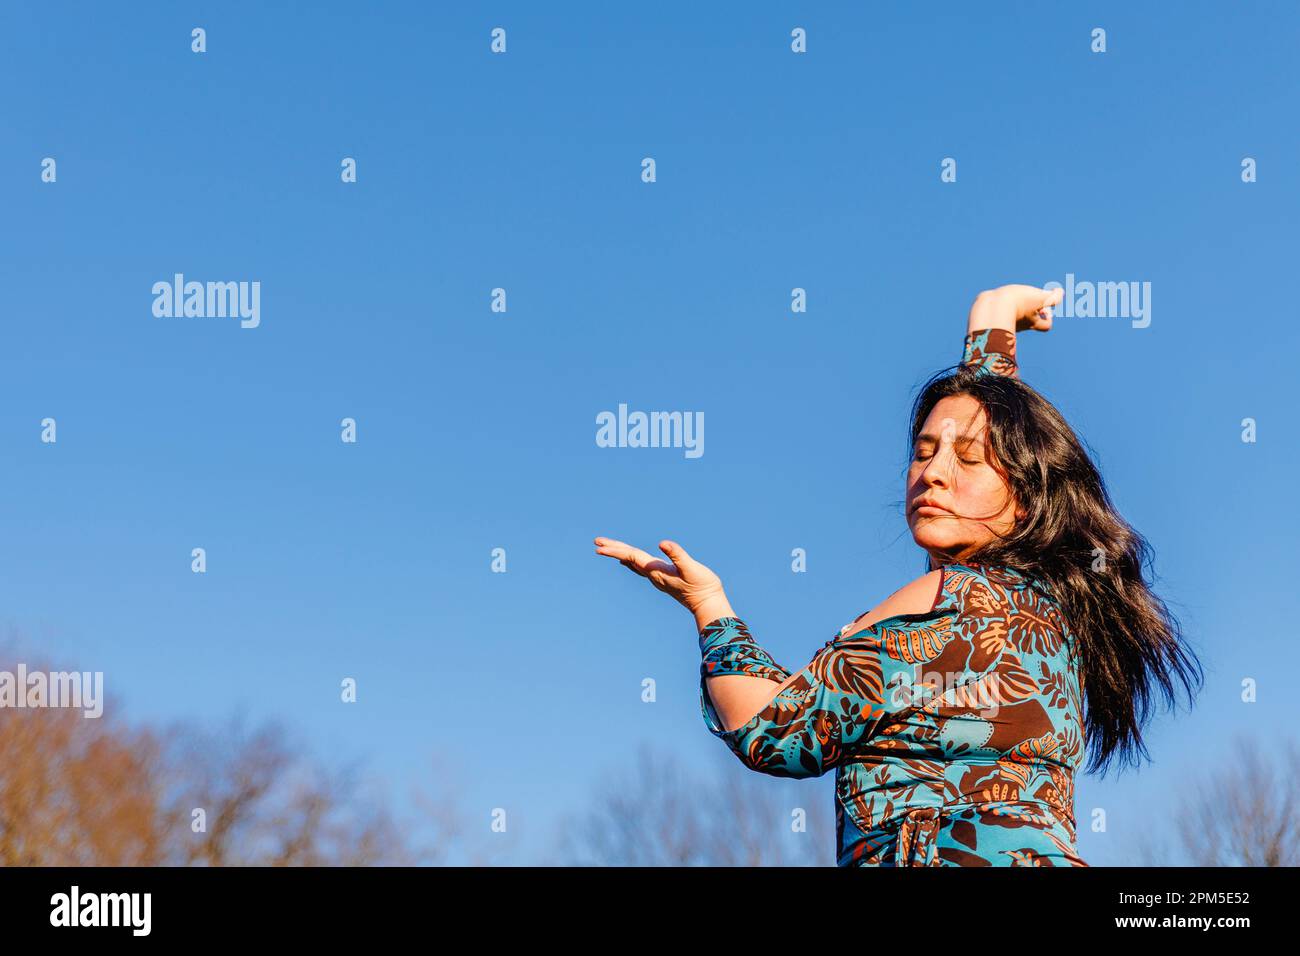 Appassionato ritratto di donna che danza contro il cielo blu Foto Stock